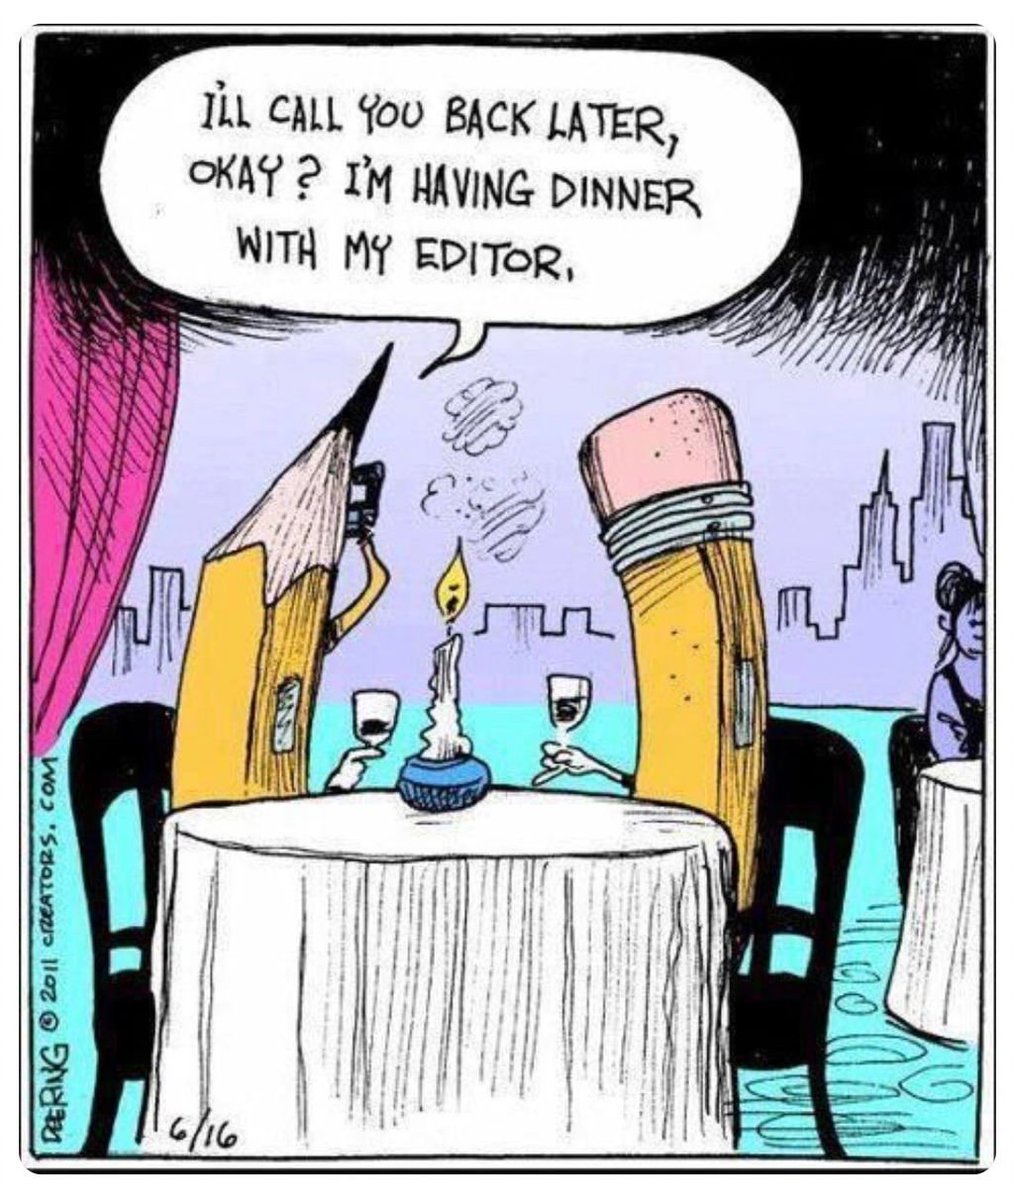 'Te llamaré más tarde, ¿de acuerdo? Estoy cenando con mi editor.' por DeeRing 2011 @CervantesMHC #CervantesMileHighCity